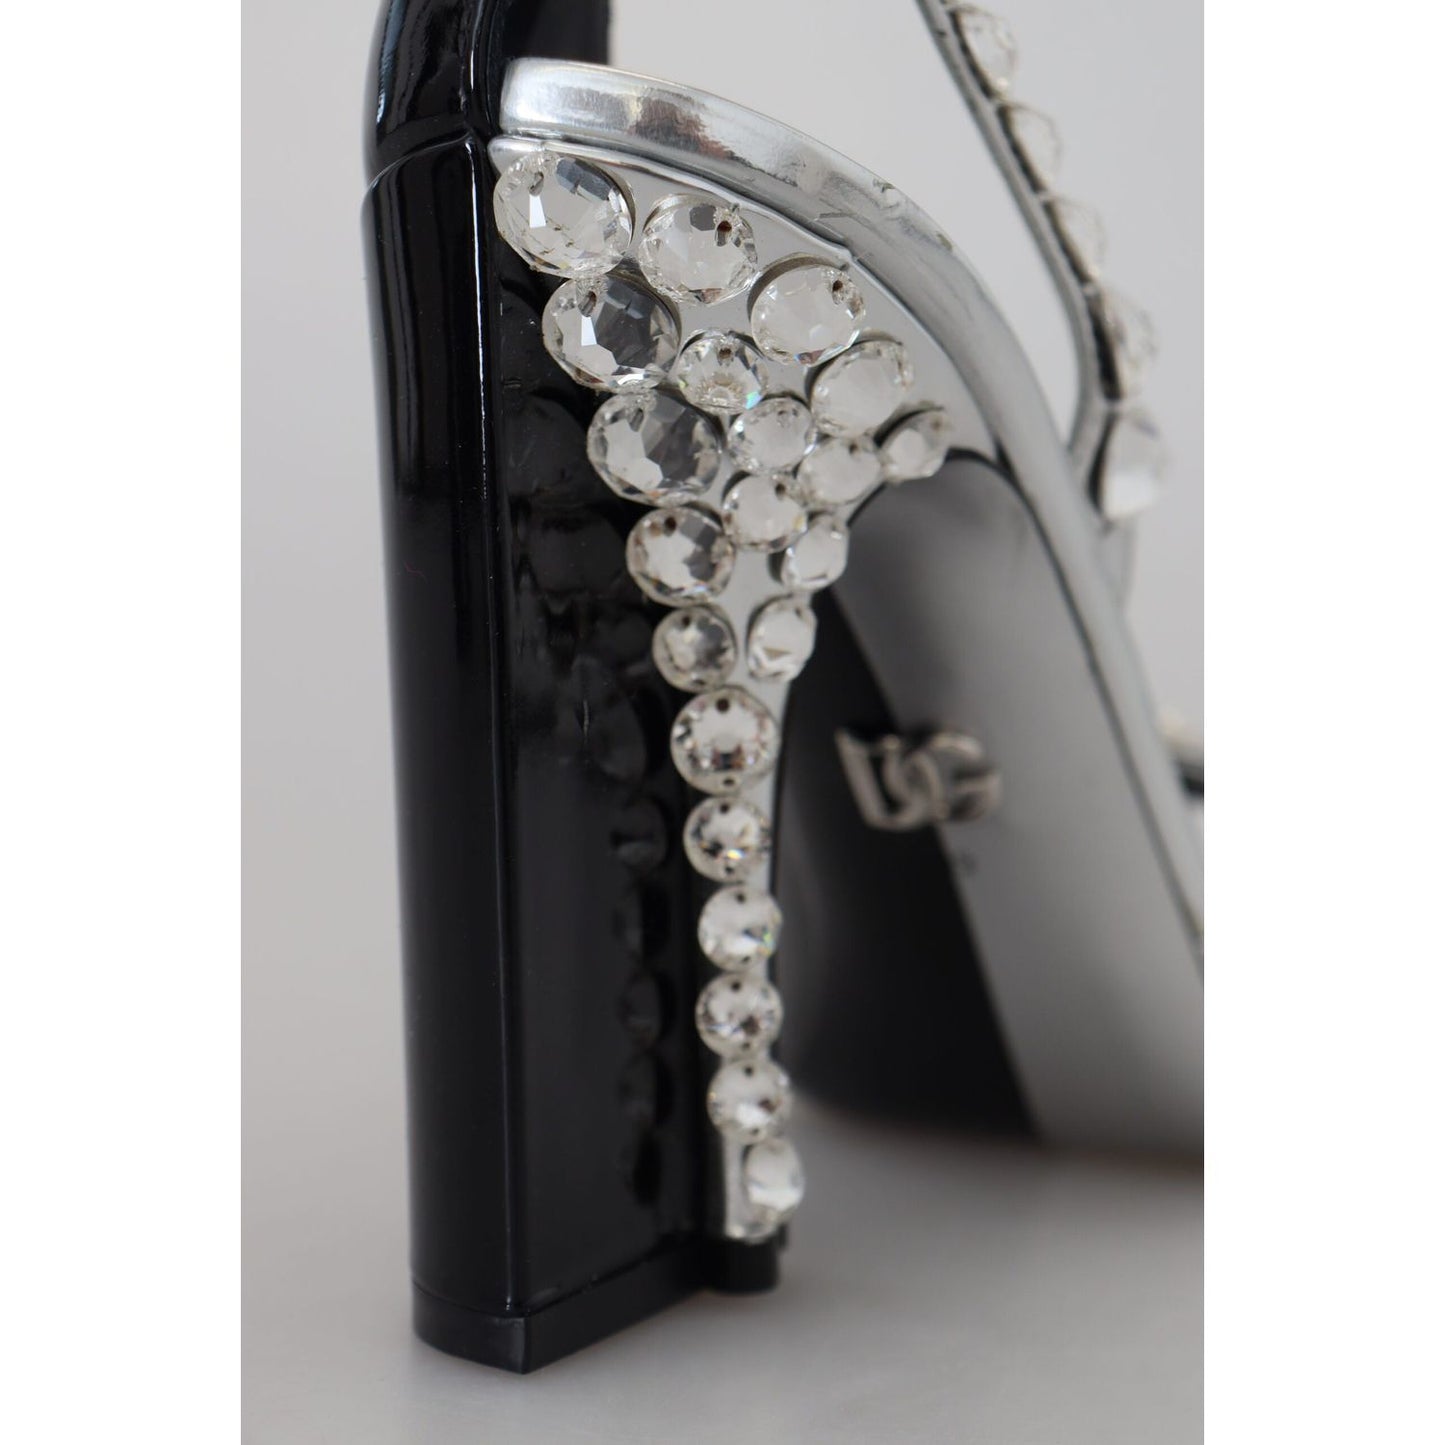 Dolce & Gabbana Elegant Crystals Embellished Leather Pumps black-silver-crystal-double-design-high-heels-shoes